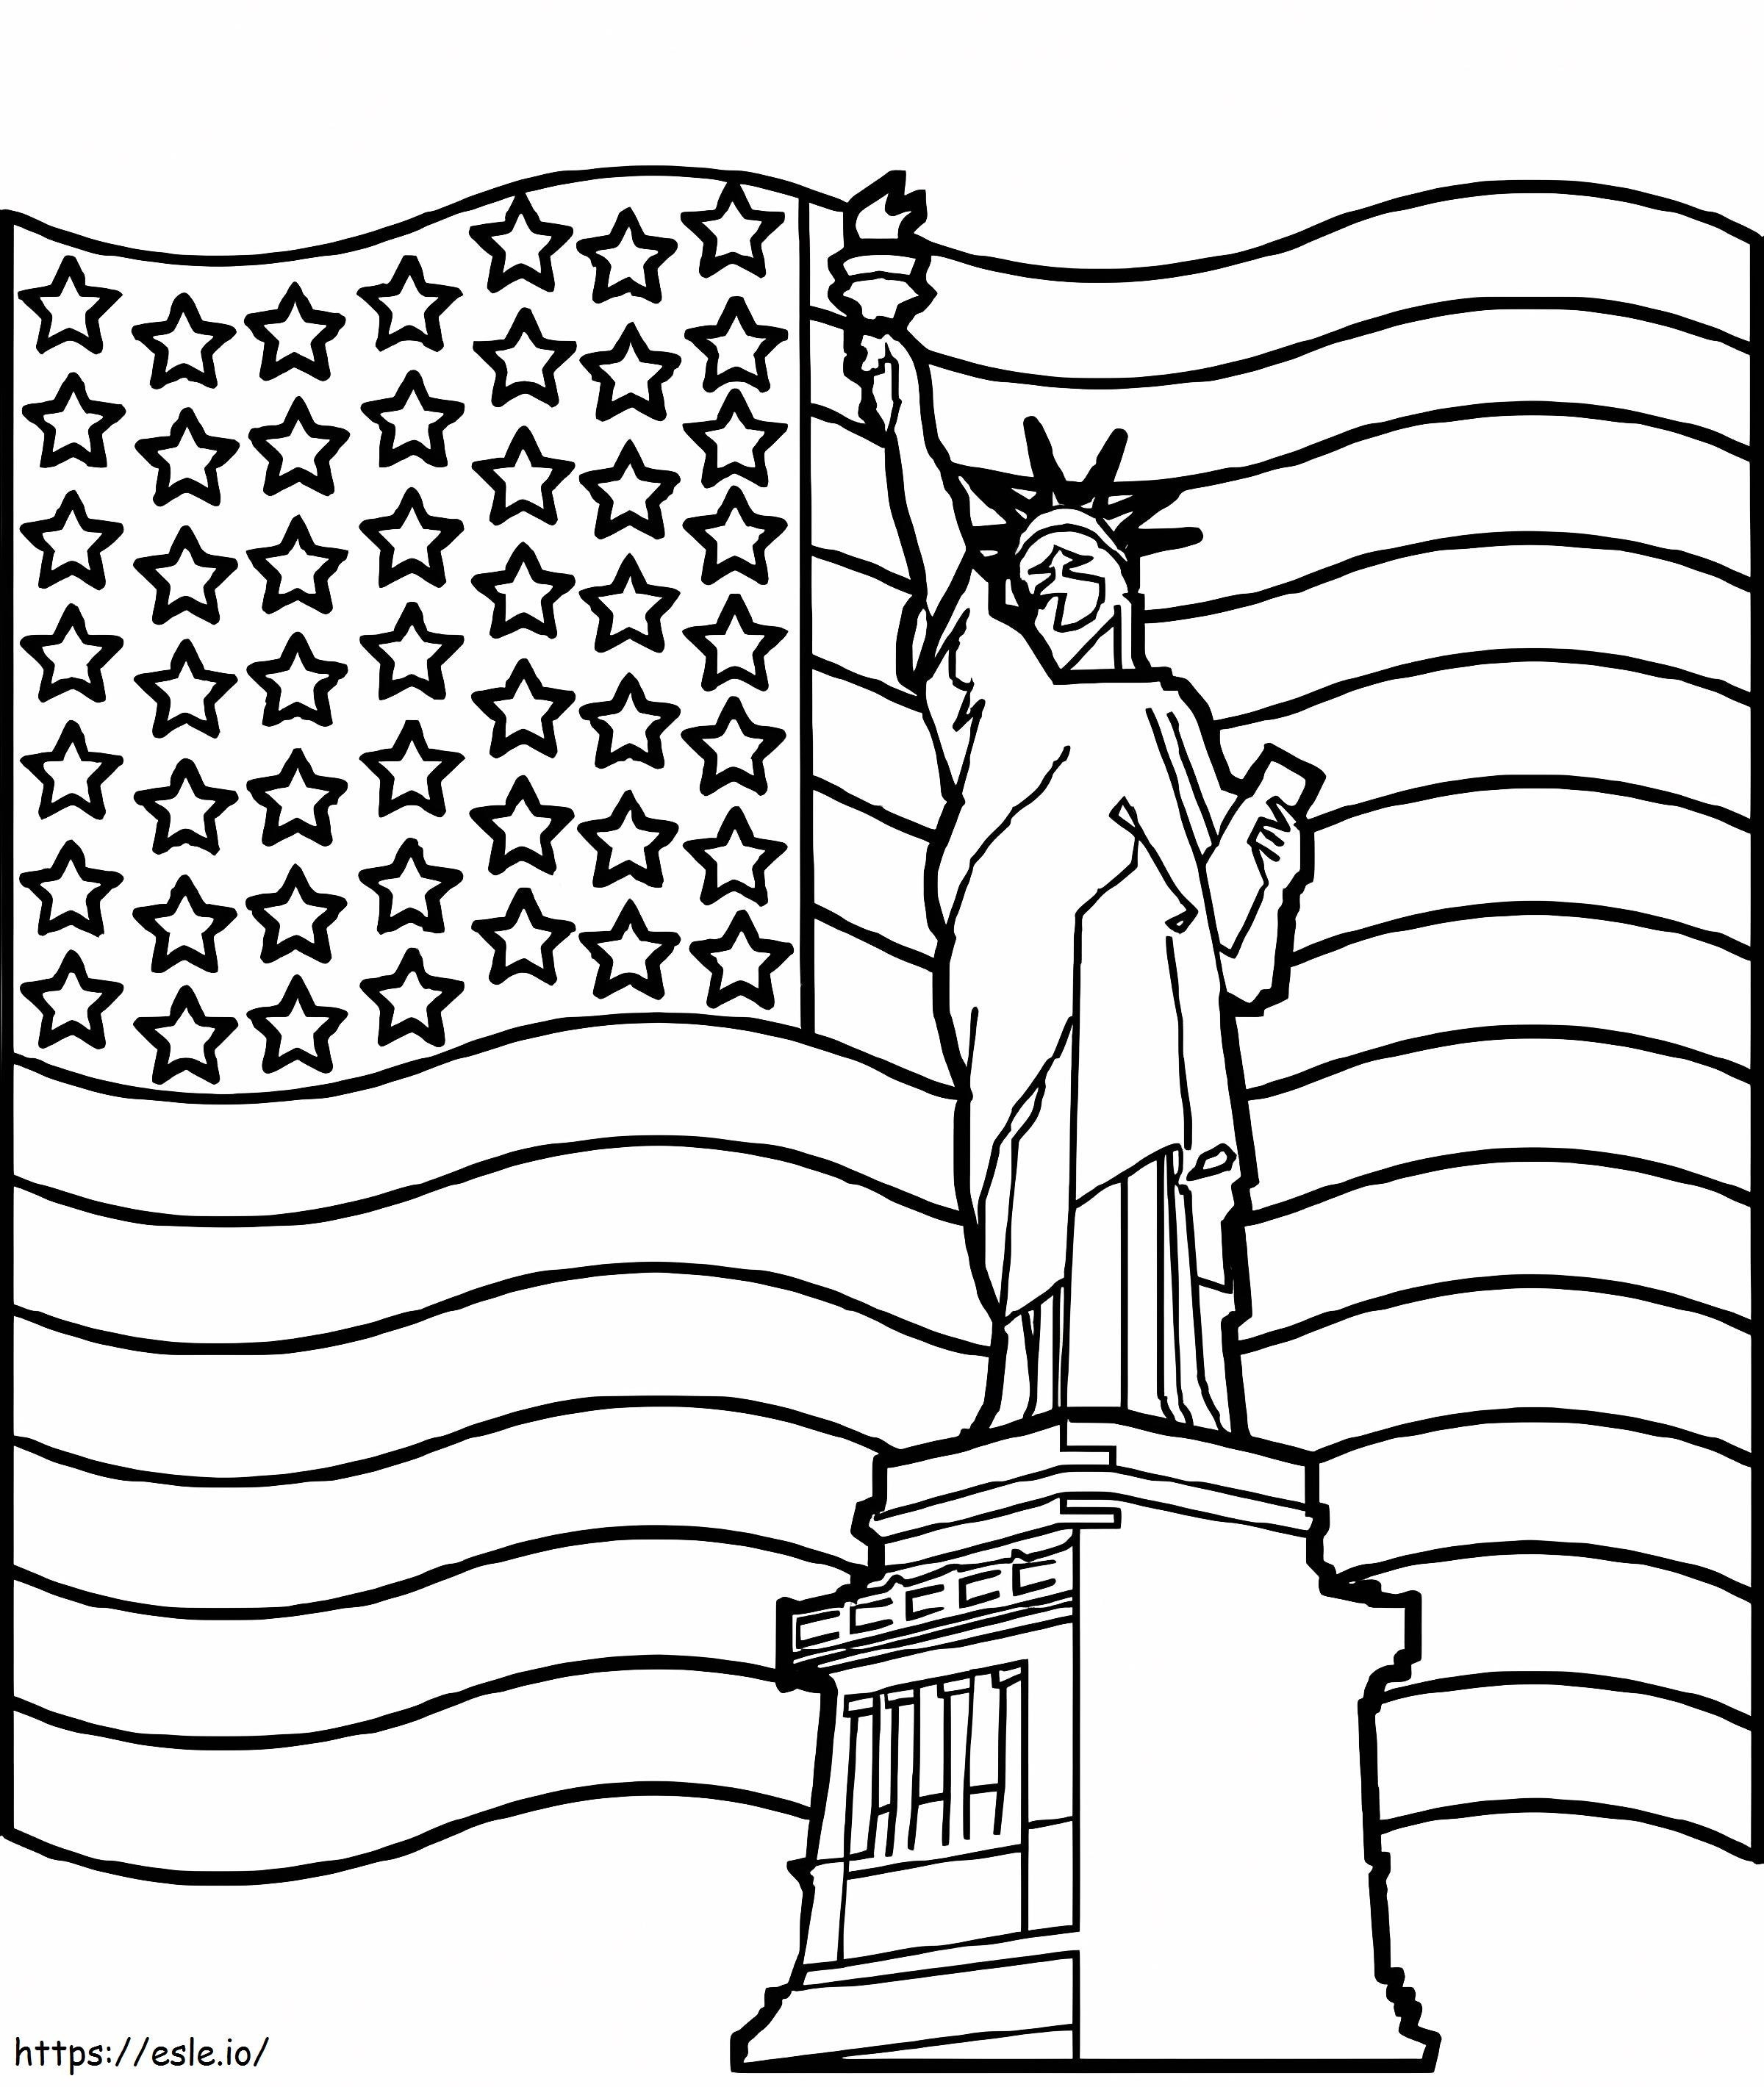 Estátua da liberdade com bandeira para colorir